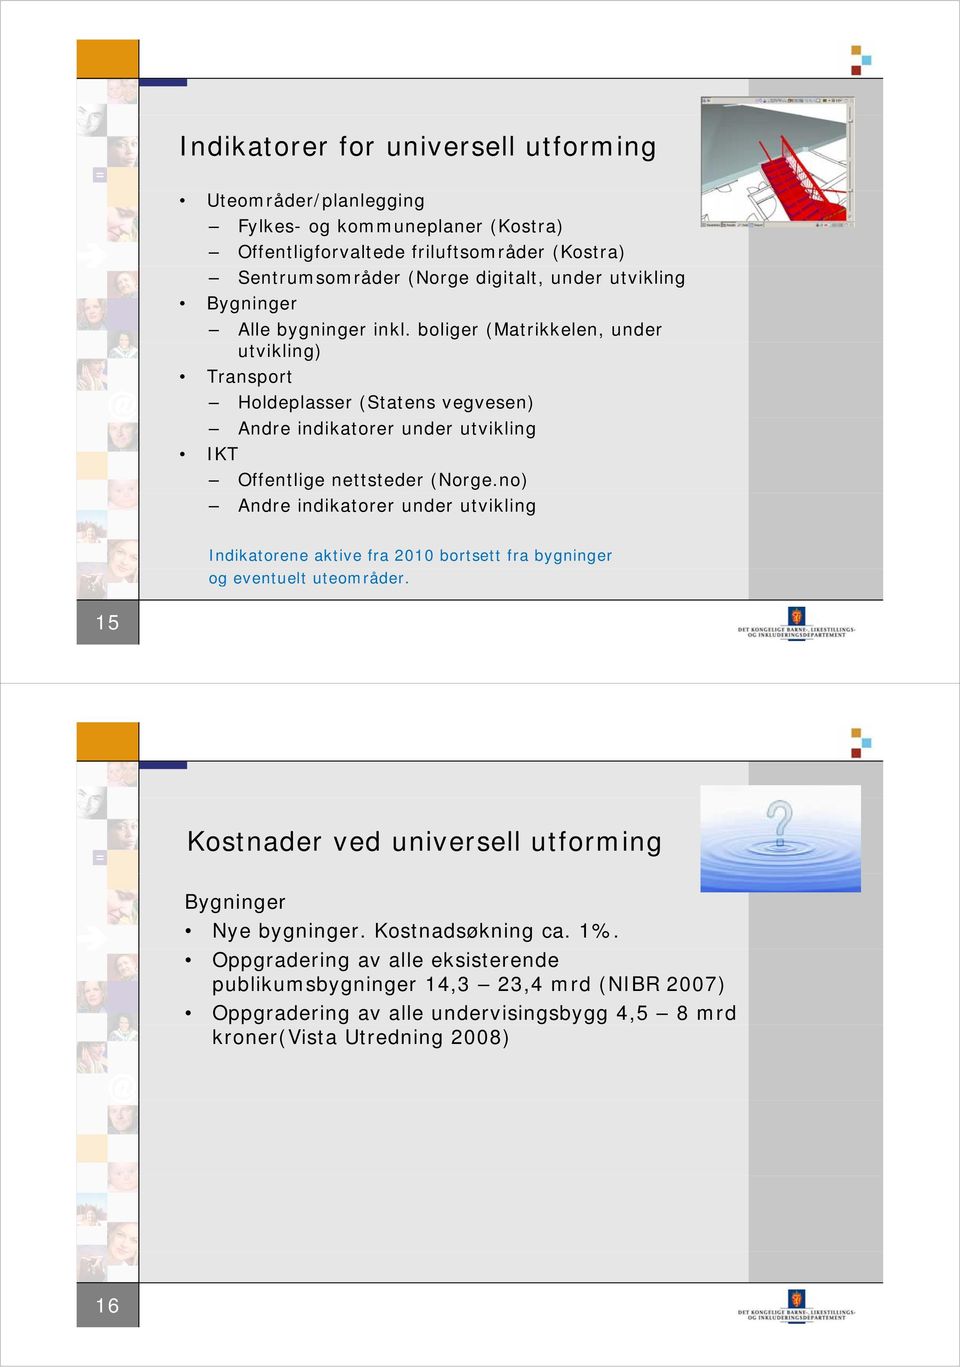 boliger (Matrikkelen, under utvikling) Transport Holdeplasser (Statens vegvesen) Andre indikatorer under utvikling IKT Offentlige nettsteder (Norge.